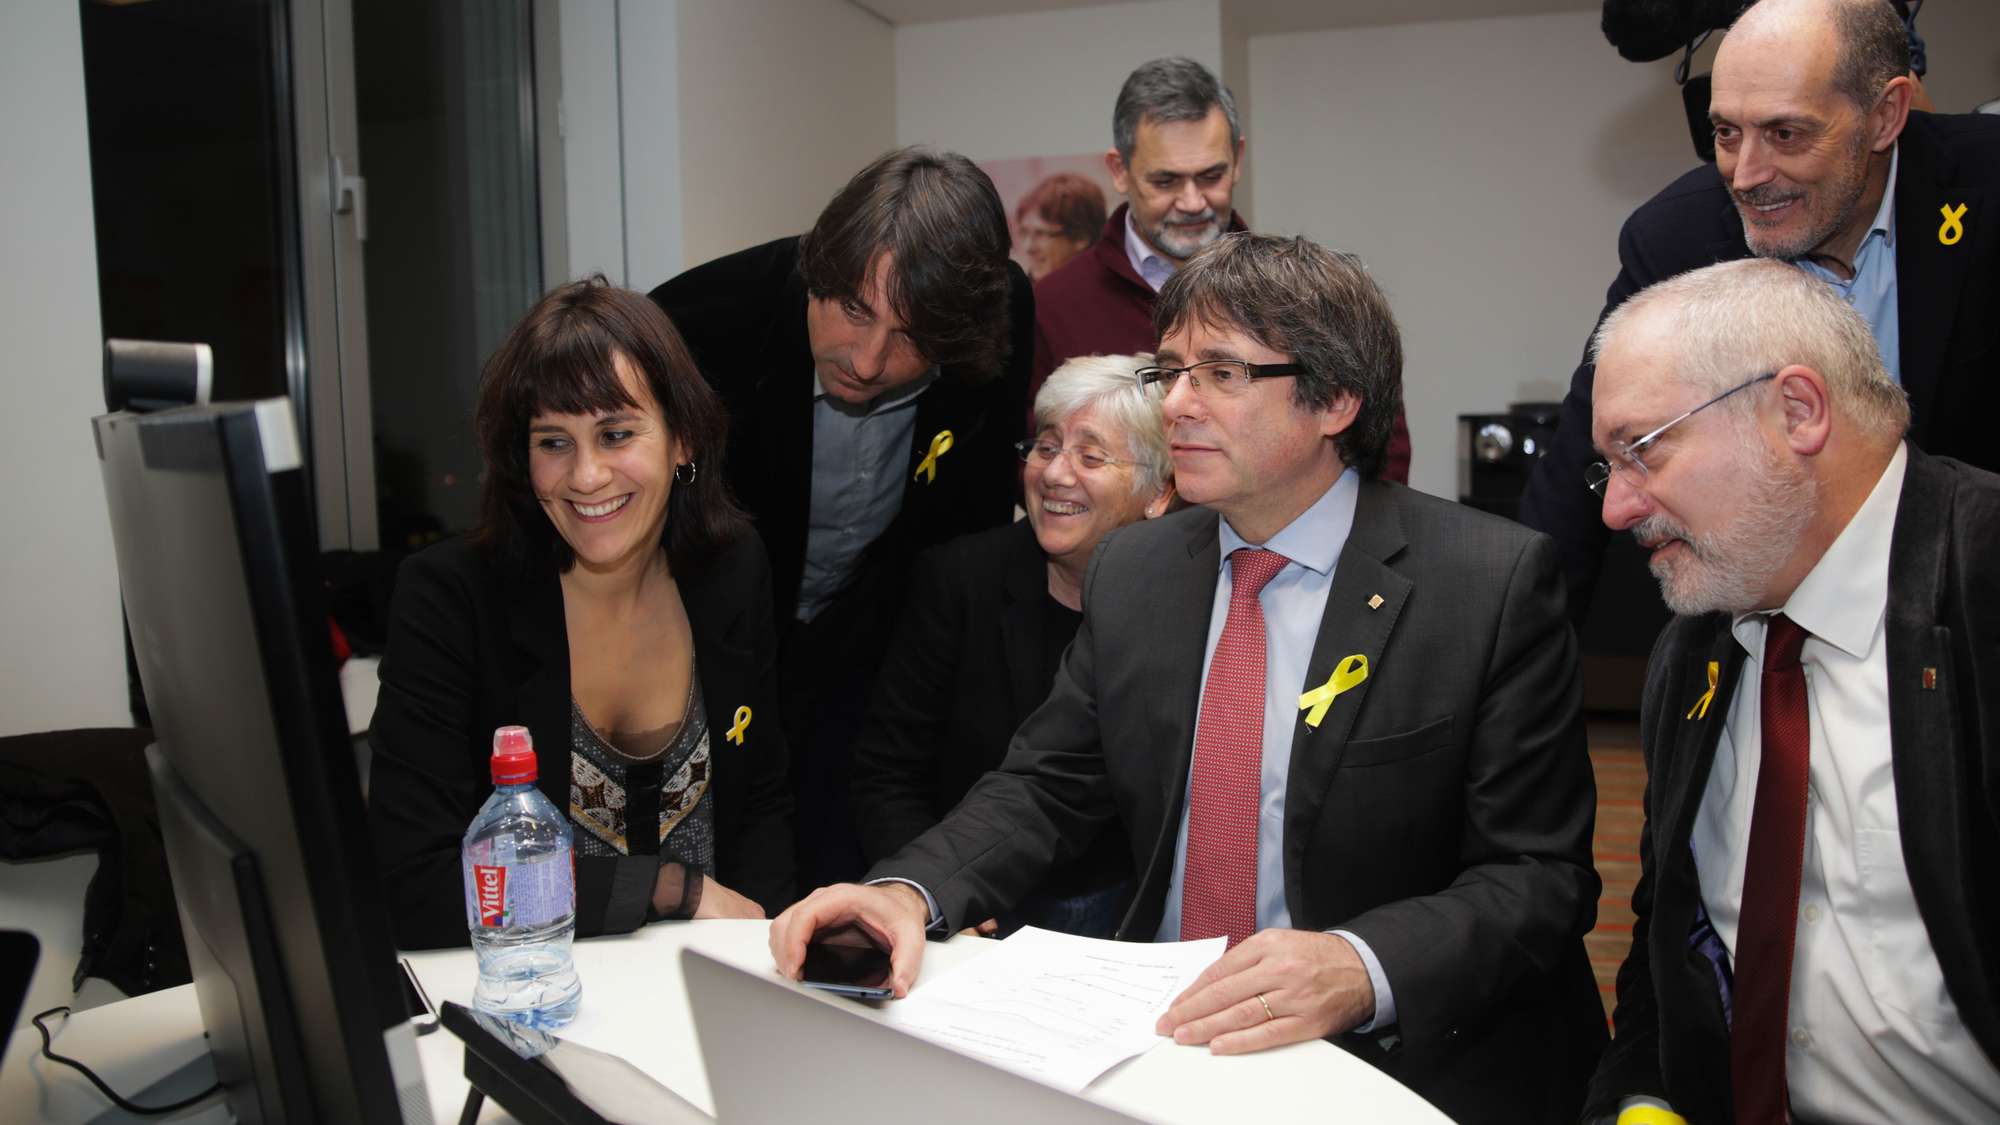 Katalonski separatisti imaju tijesnu većinu u katalonskom parlamentu